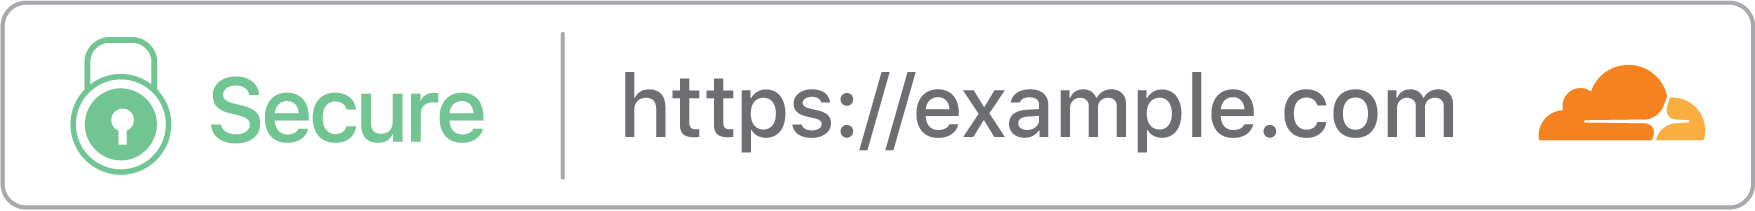 Website mit HTTPS